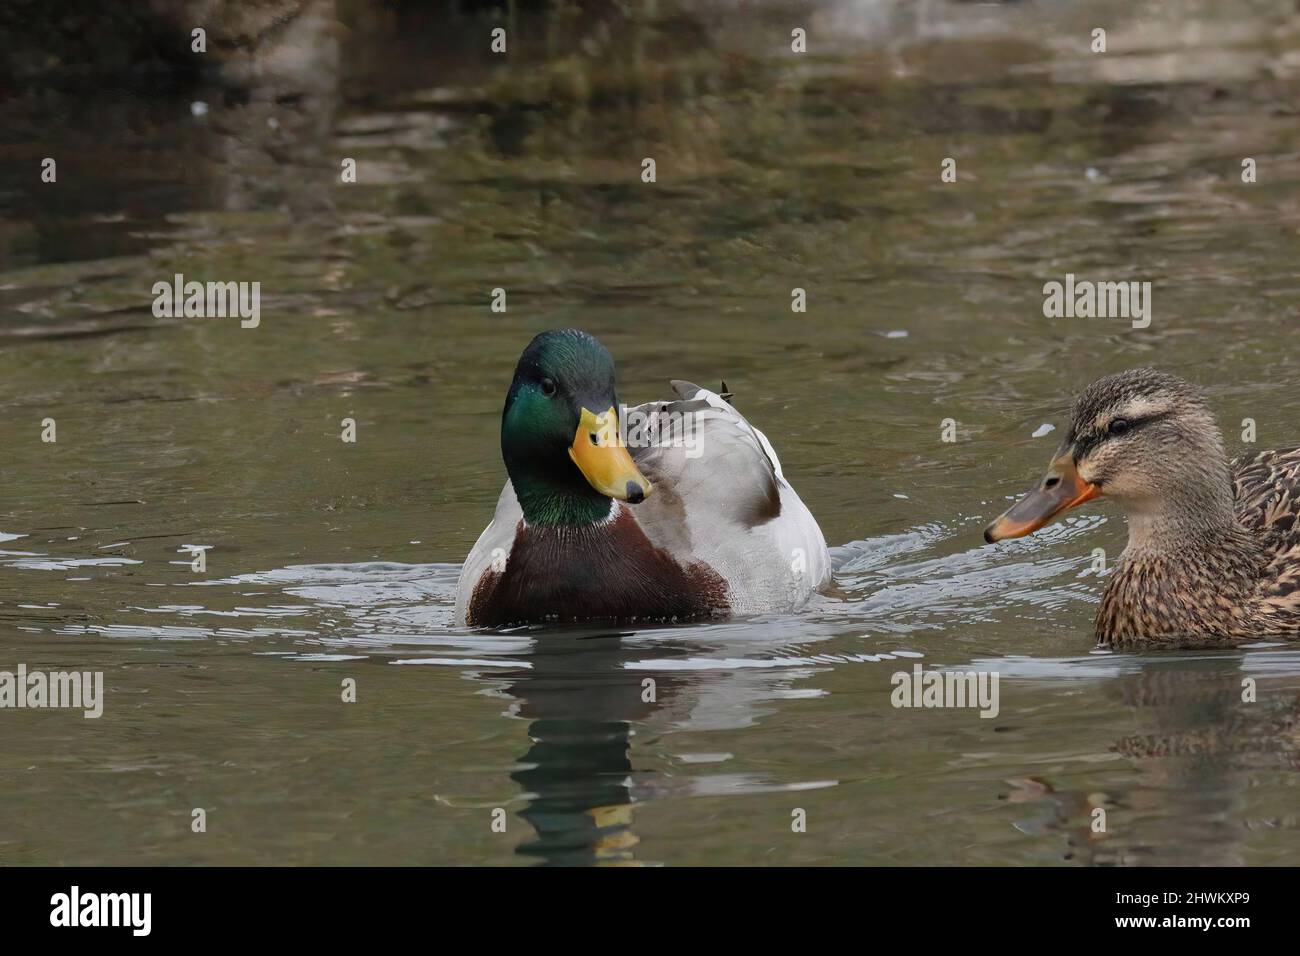 canard nageant dans une rivière Banque D'Images